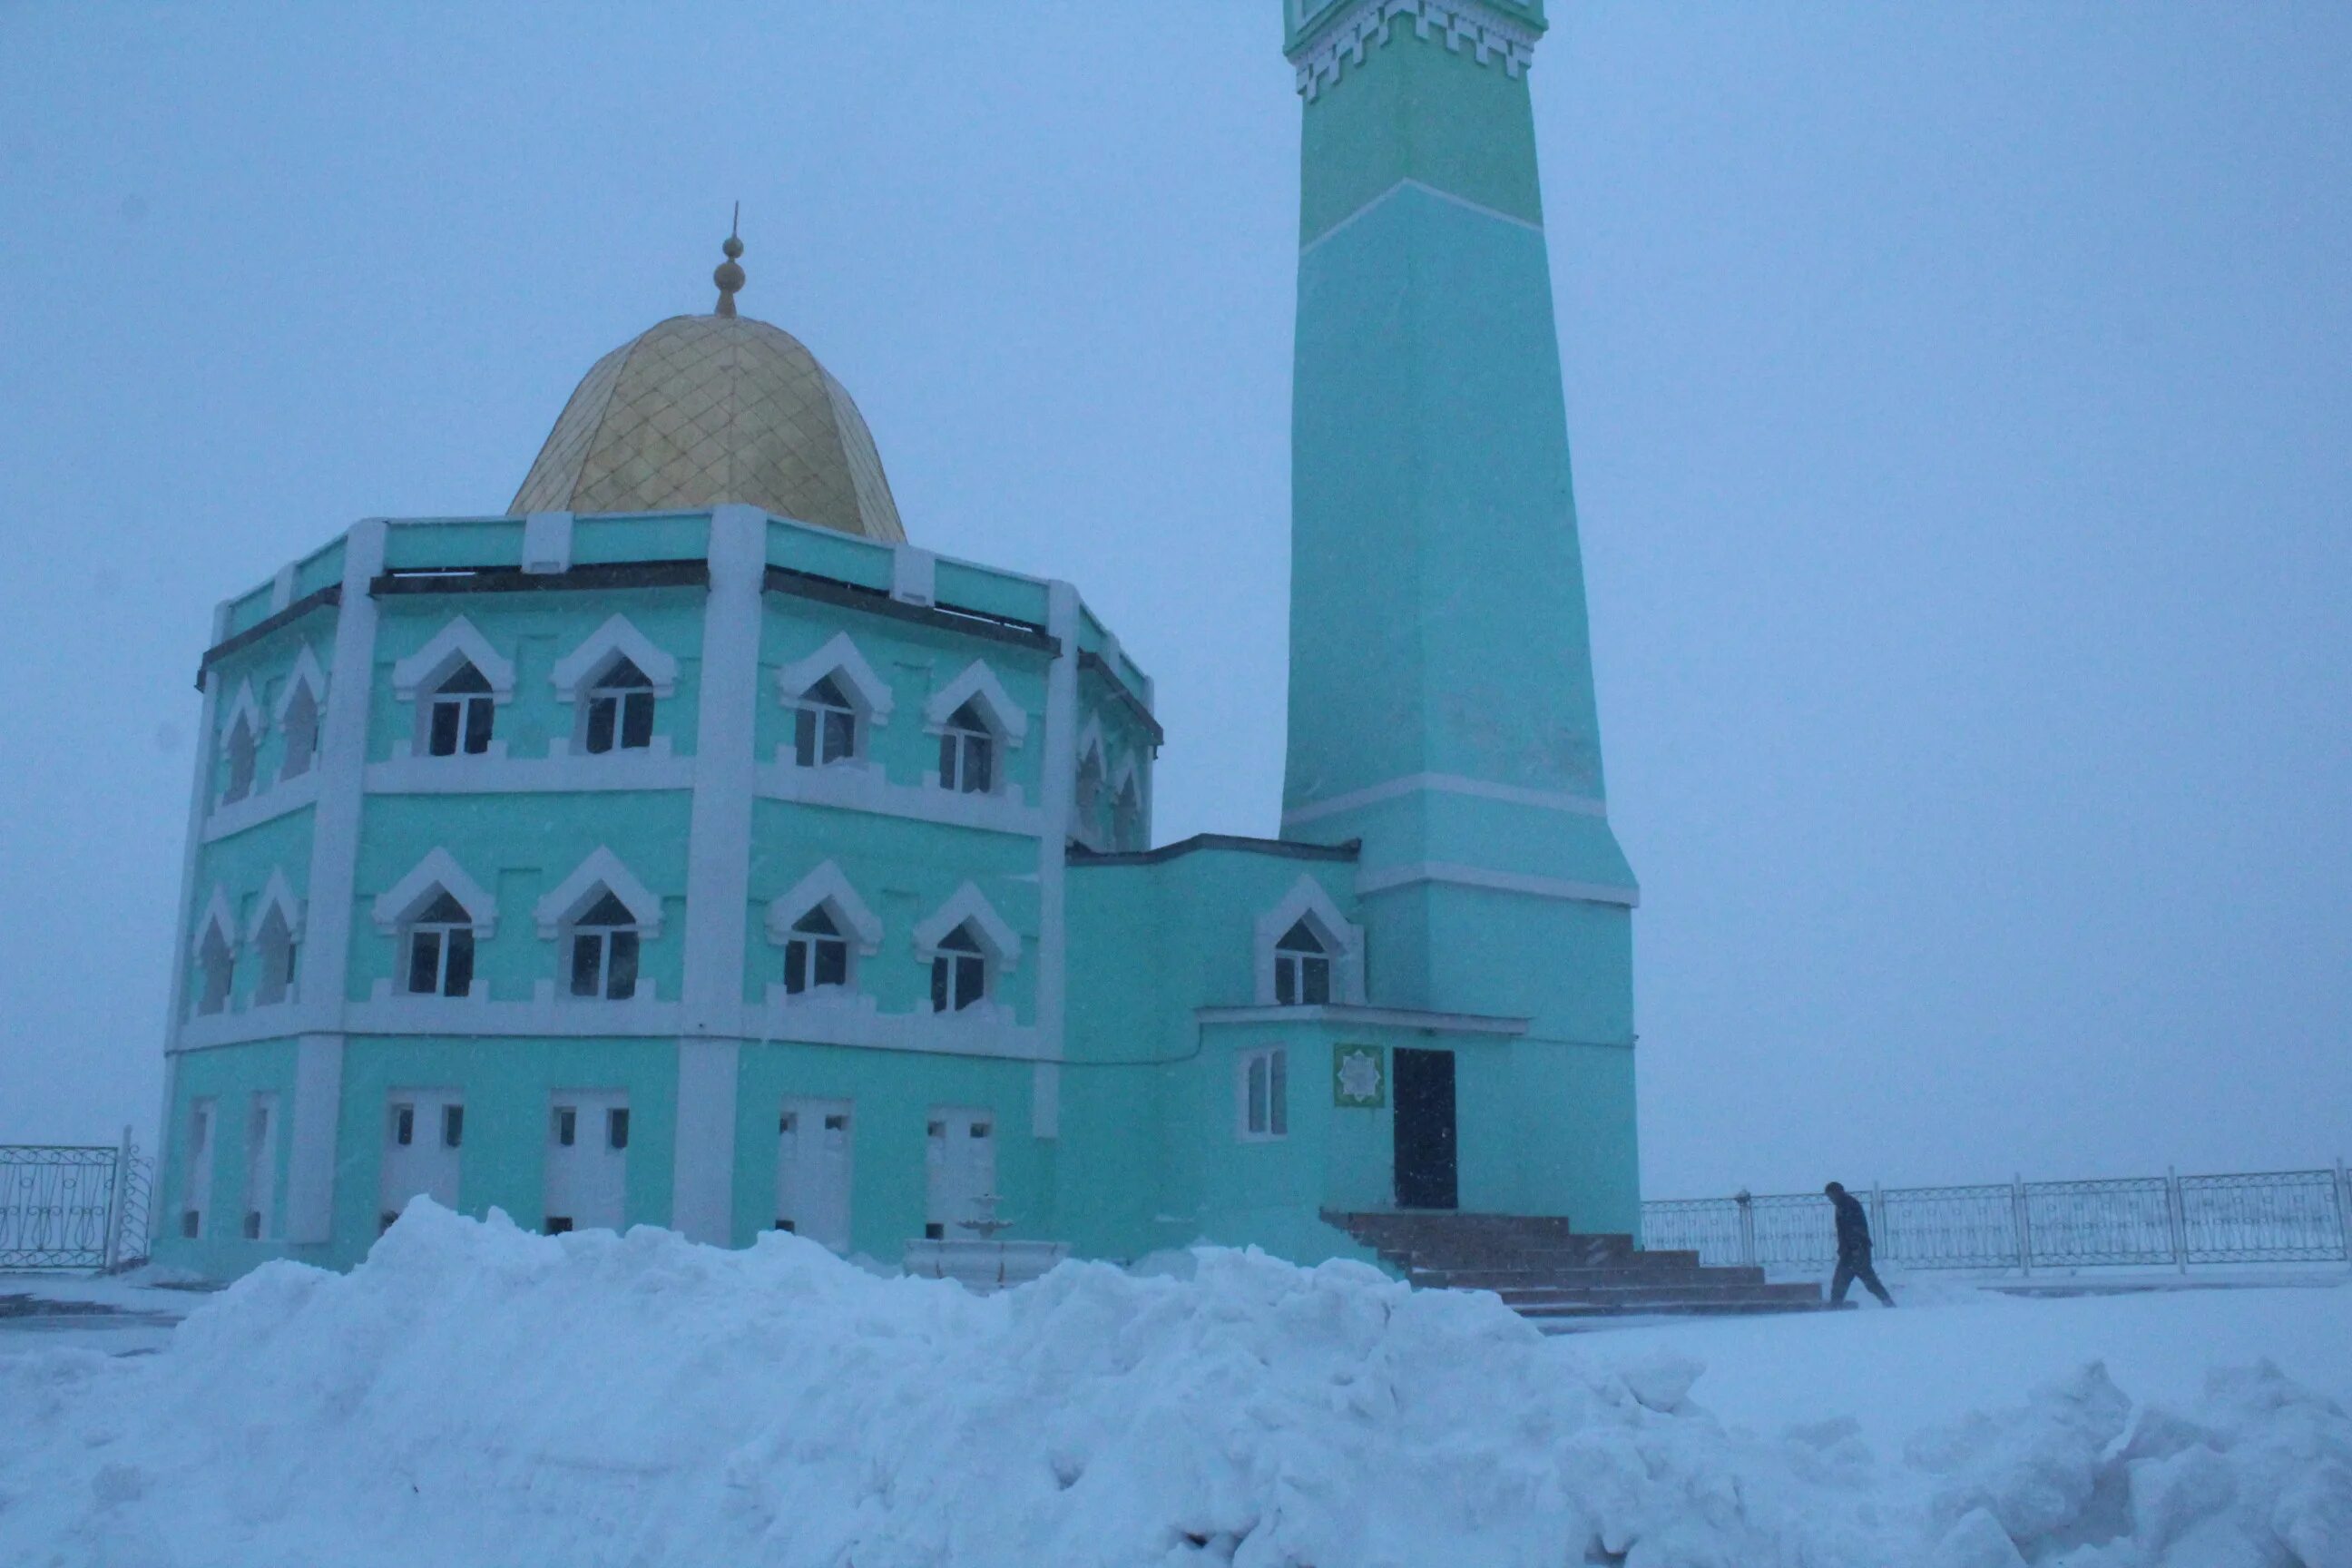 Нурд камаль. Мечеть Нурд-Камаль. Мечеть Нурд Камаль в Норильске. Мечеть Нурд Камал внутри. Мечеть Нурд-Камаль — самая Северная в мире.